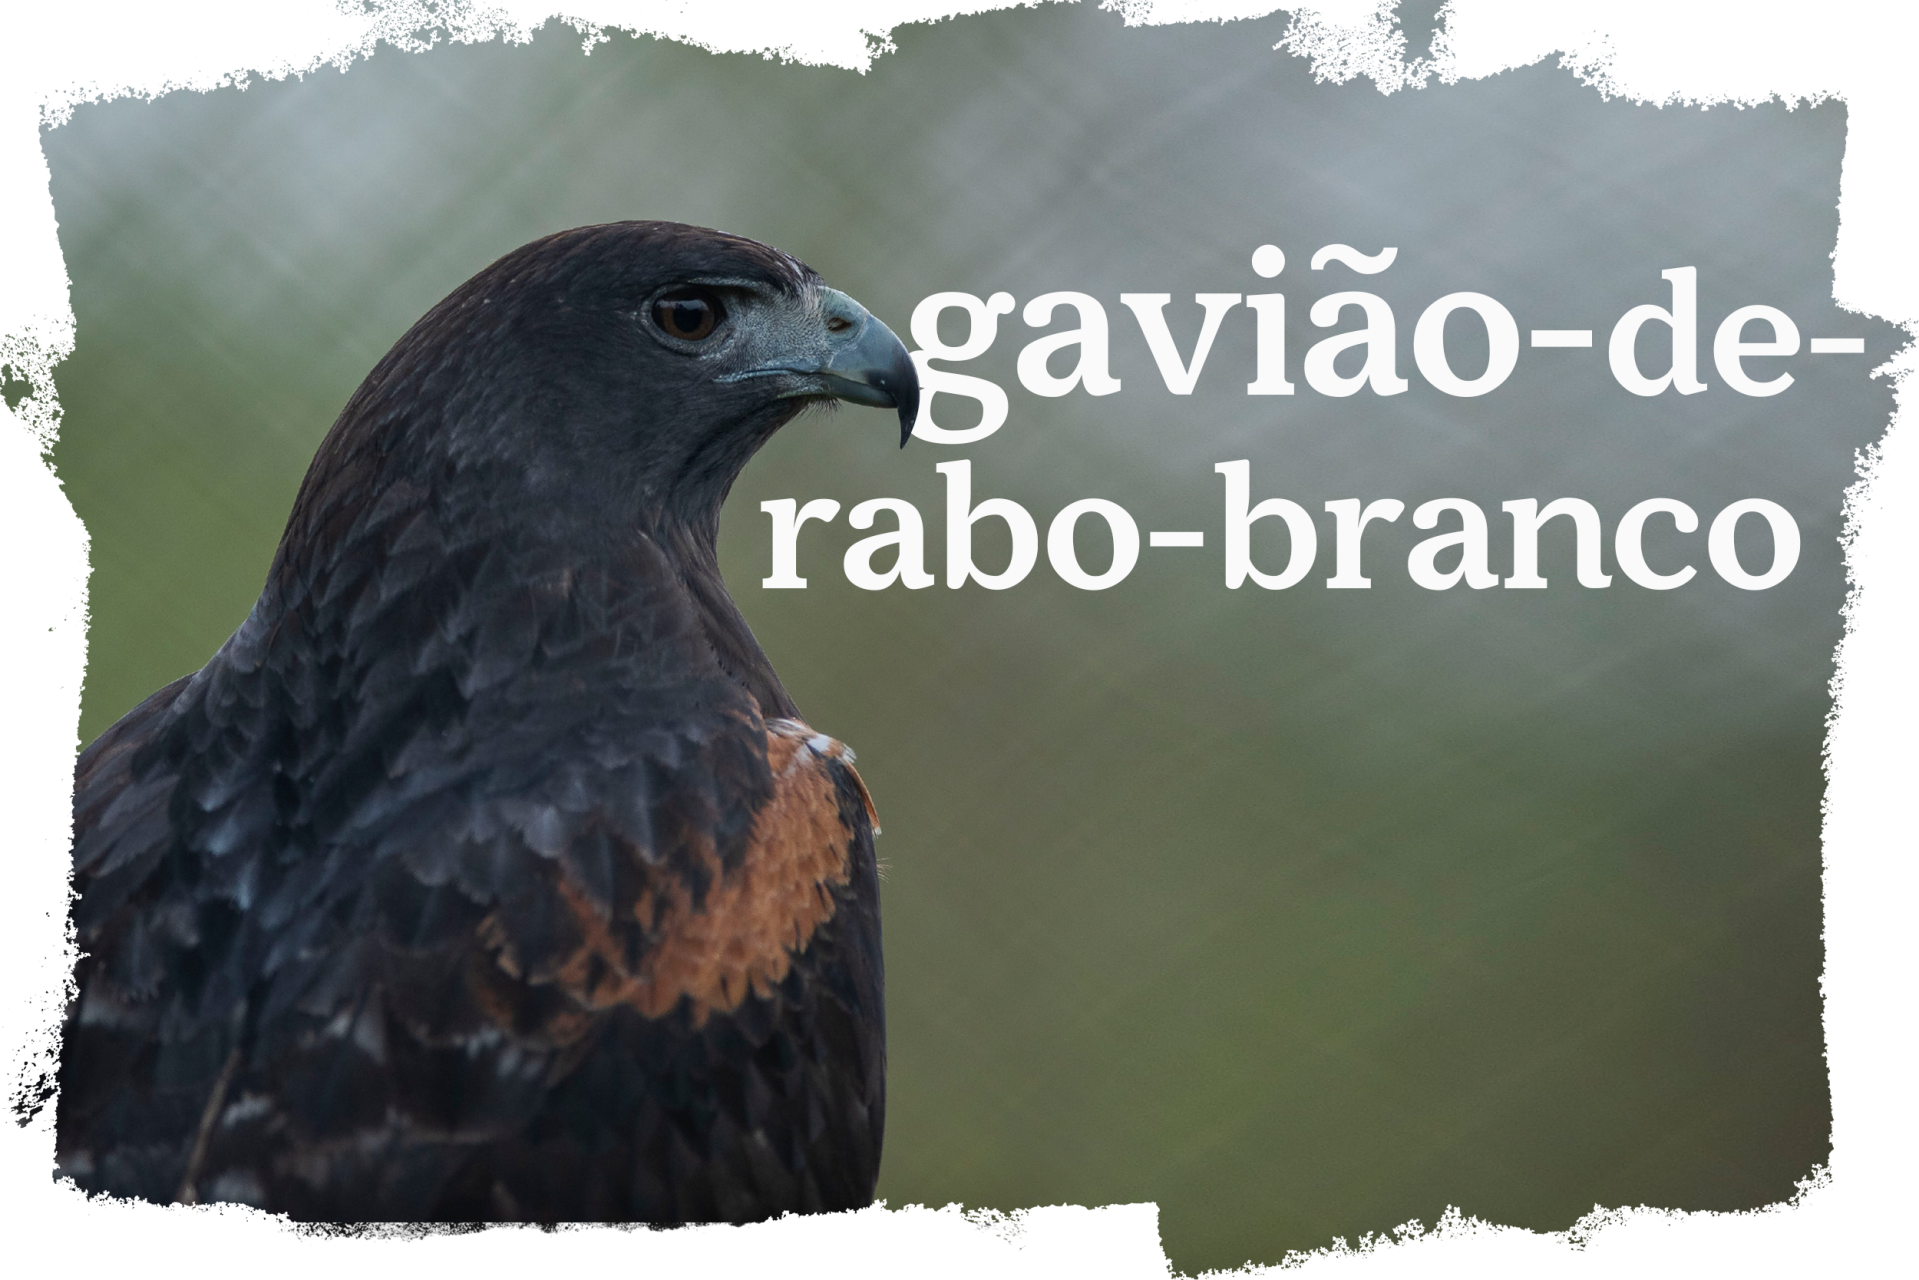 Cover_Gaviao_Rabo_Branco.png